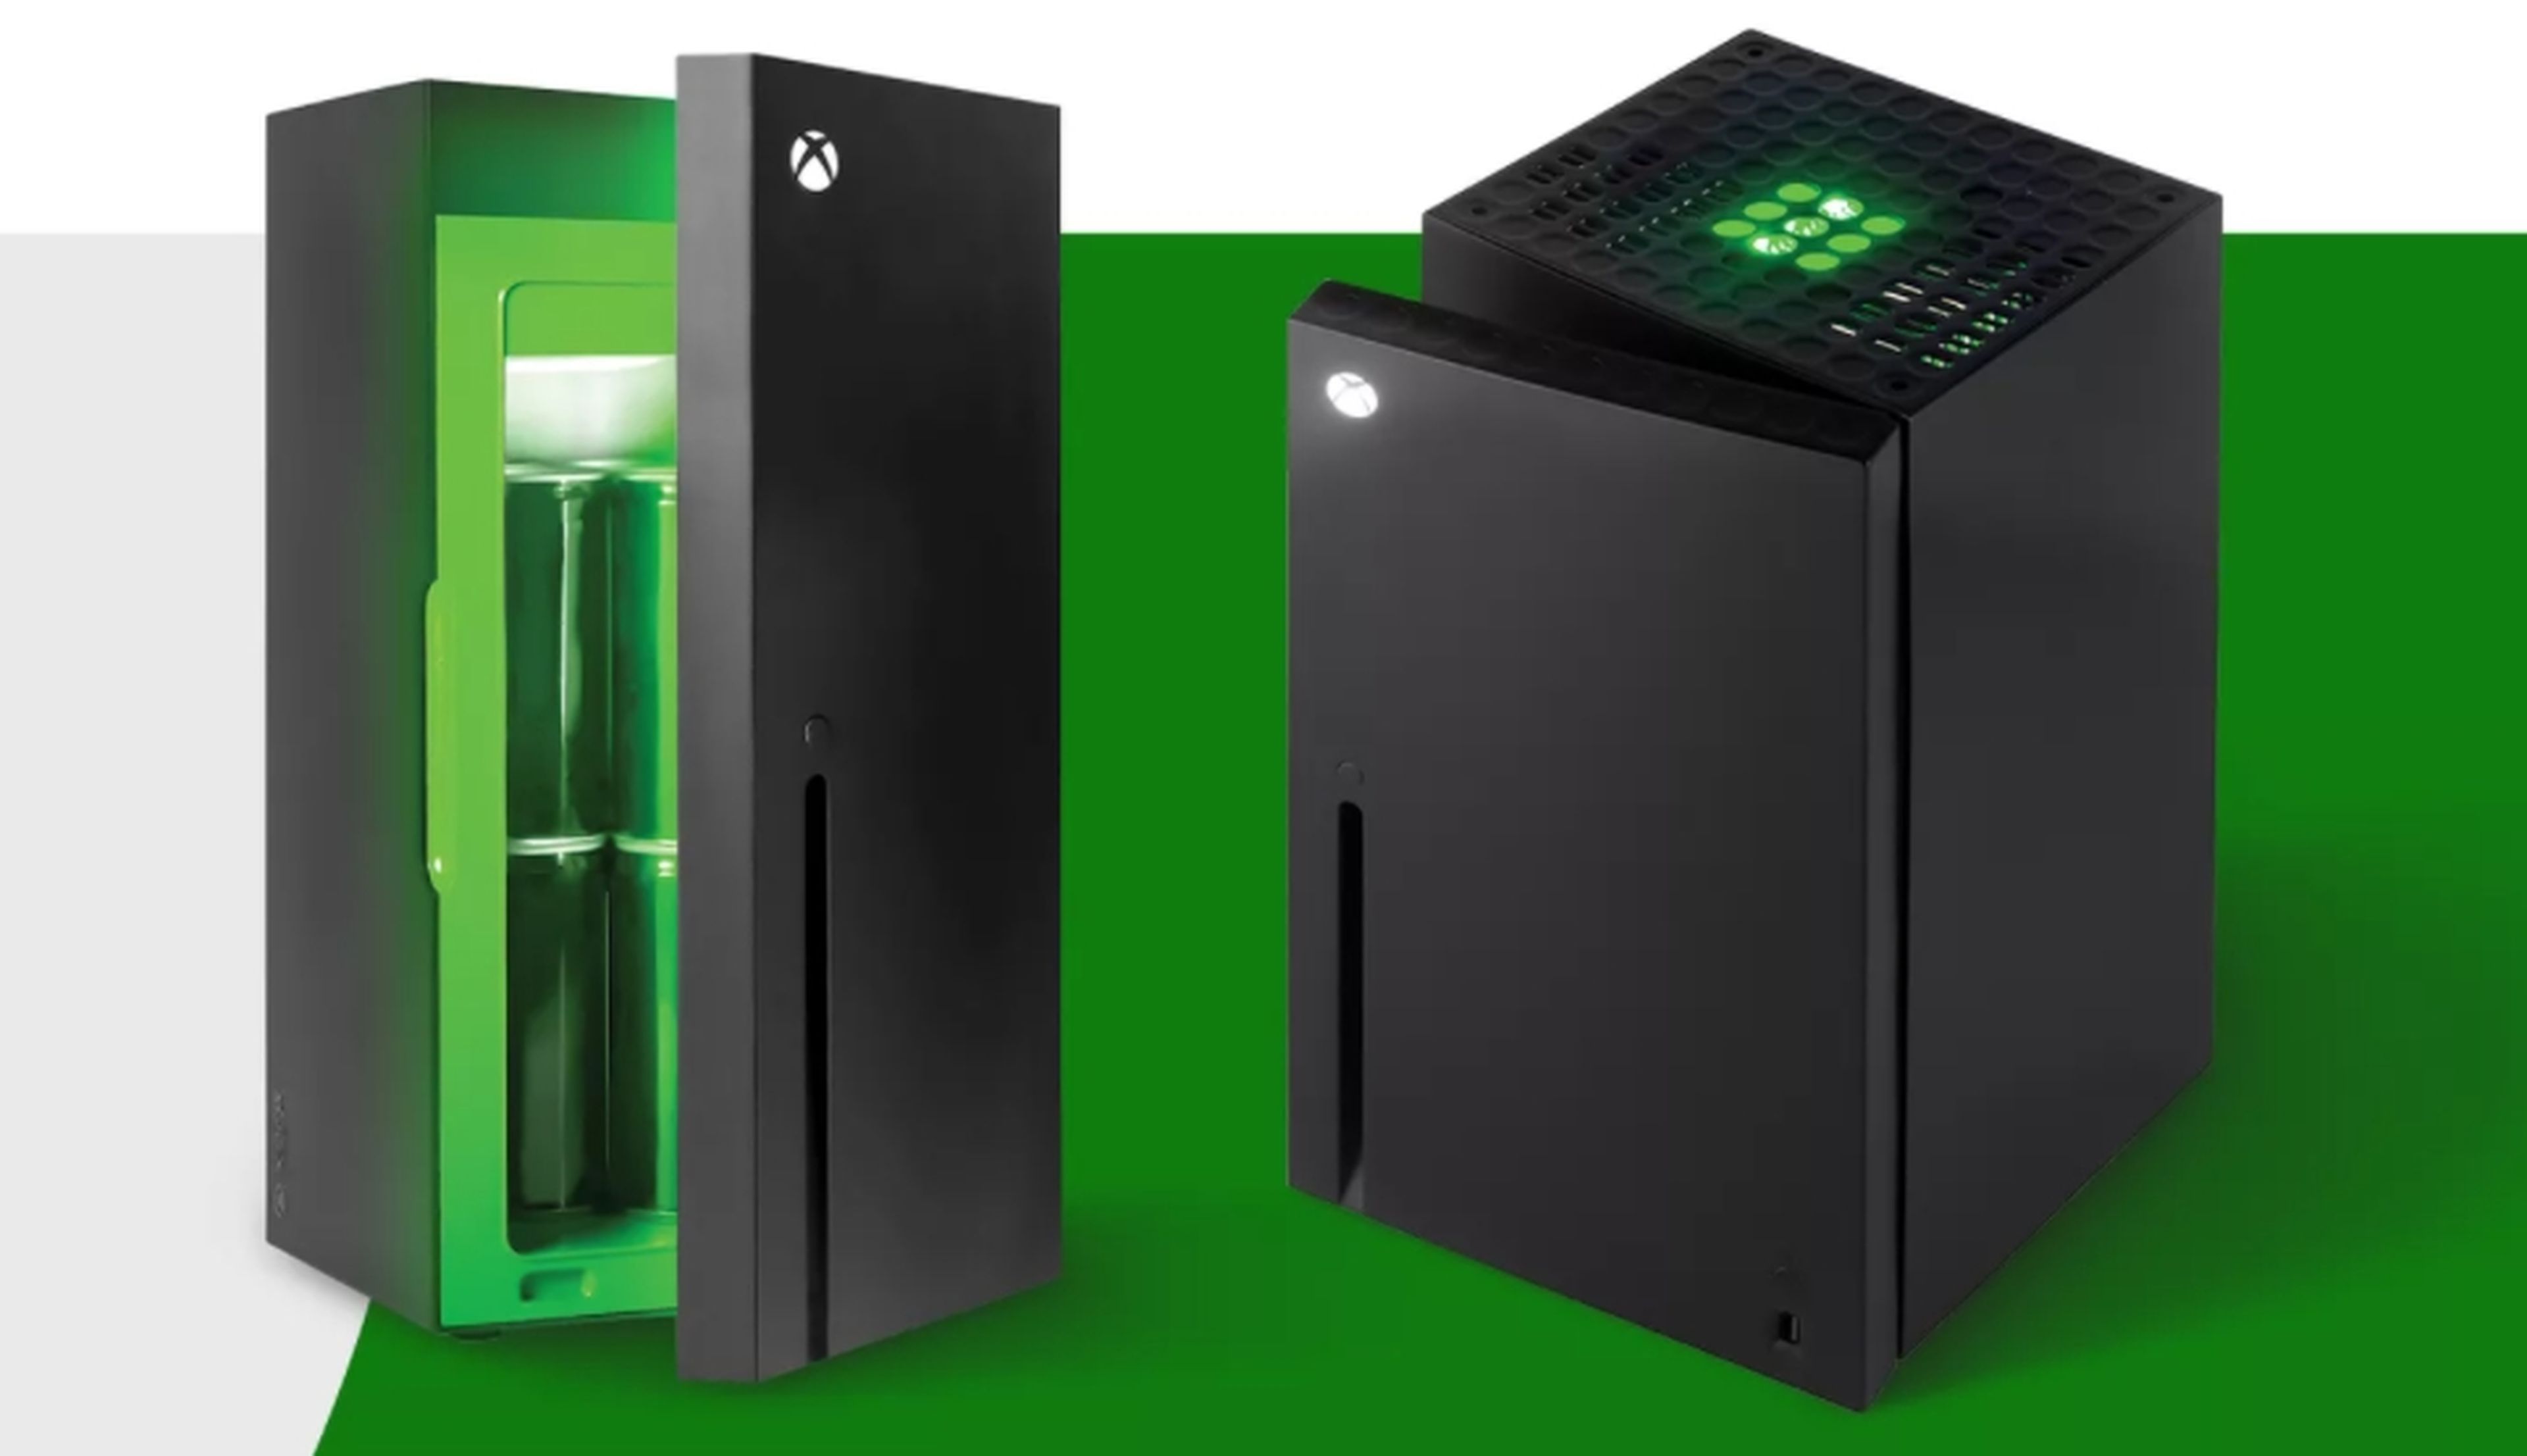 Corre! El refrigerador de Xbox Series X está disponible en